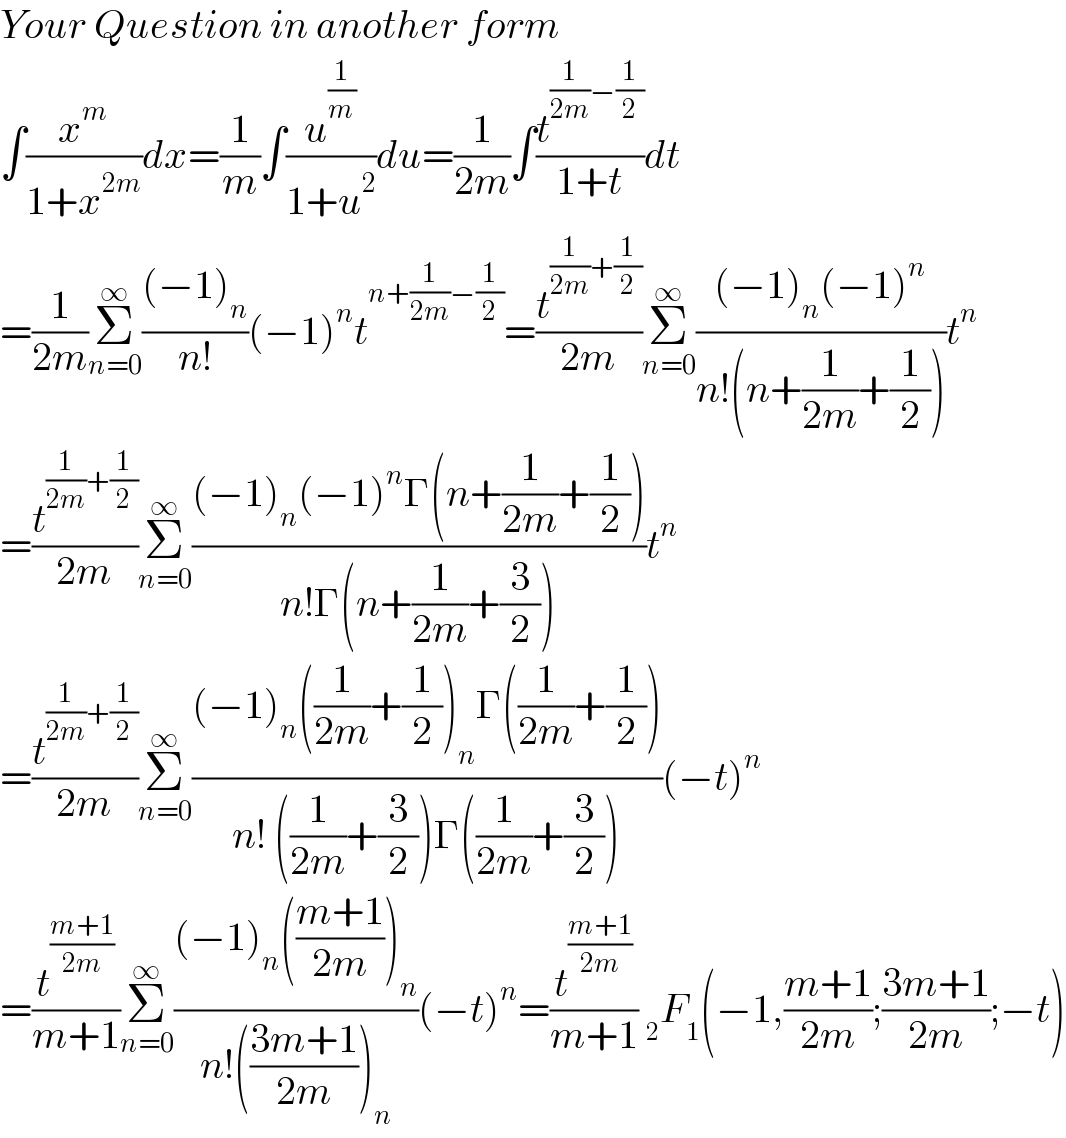 Your Question in another form  ∫(x^m /(1+x^(2m) ))dx=(1/m)∫(u^(1/m) /(1+u^2 ))du=(1/(2m))∫(t^((1/(2m))−(1/2)) /(1+t))dt  =(1/(2m))Σ_(n=0) ^∞ (((−1)_n )/(n!))(−1)^n t^(n+(1/(2m))−(1/2)) =(t^((1/(2m))+(1/2)) /(2m))Σ_(n=0) ^∞ (((−1)_n (−1)^n )/(n!(n+(1/(2m))+(1/2))))t^n   =(t^((1/(2m))+(1/2)) /(2m))Σ_(n=0) ^∞ (((−1)_n (−1)^n Γ(n+(1/(2m))+(1/2)))/(n!Γ(n+(1/(2m))+(3/2))))t^n   =(t^((1/(2m))+(1/2)) /(2m))Σ_(n=0) ^∞ (((−1)_n ((1/(2m))+(1/2))_n Γ((1/(2m))+(1/2)))/(n! ((1/(2m))+(3/2))Γ((1/(2m))+(3/2))))(−t)^n   =(t^((m+1)/(2m)) /(m+1))Σ_(n=0) ^∞ (((−1)_n (((m+1)/(2m)))_n )/(n!(((3m+1)/(2m)))_n ))(−t)^n =(t^((m+1)/(2m)) /(m+1)) _2 F_1 (−1,((m+1)/(2m));((3m+1)/(2m));−t)  